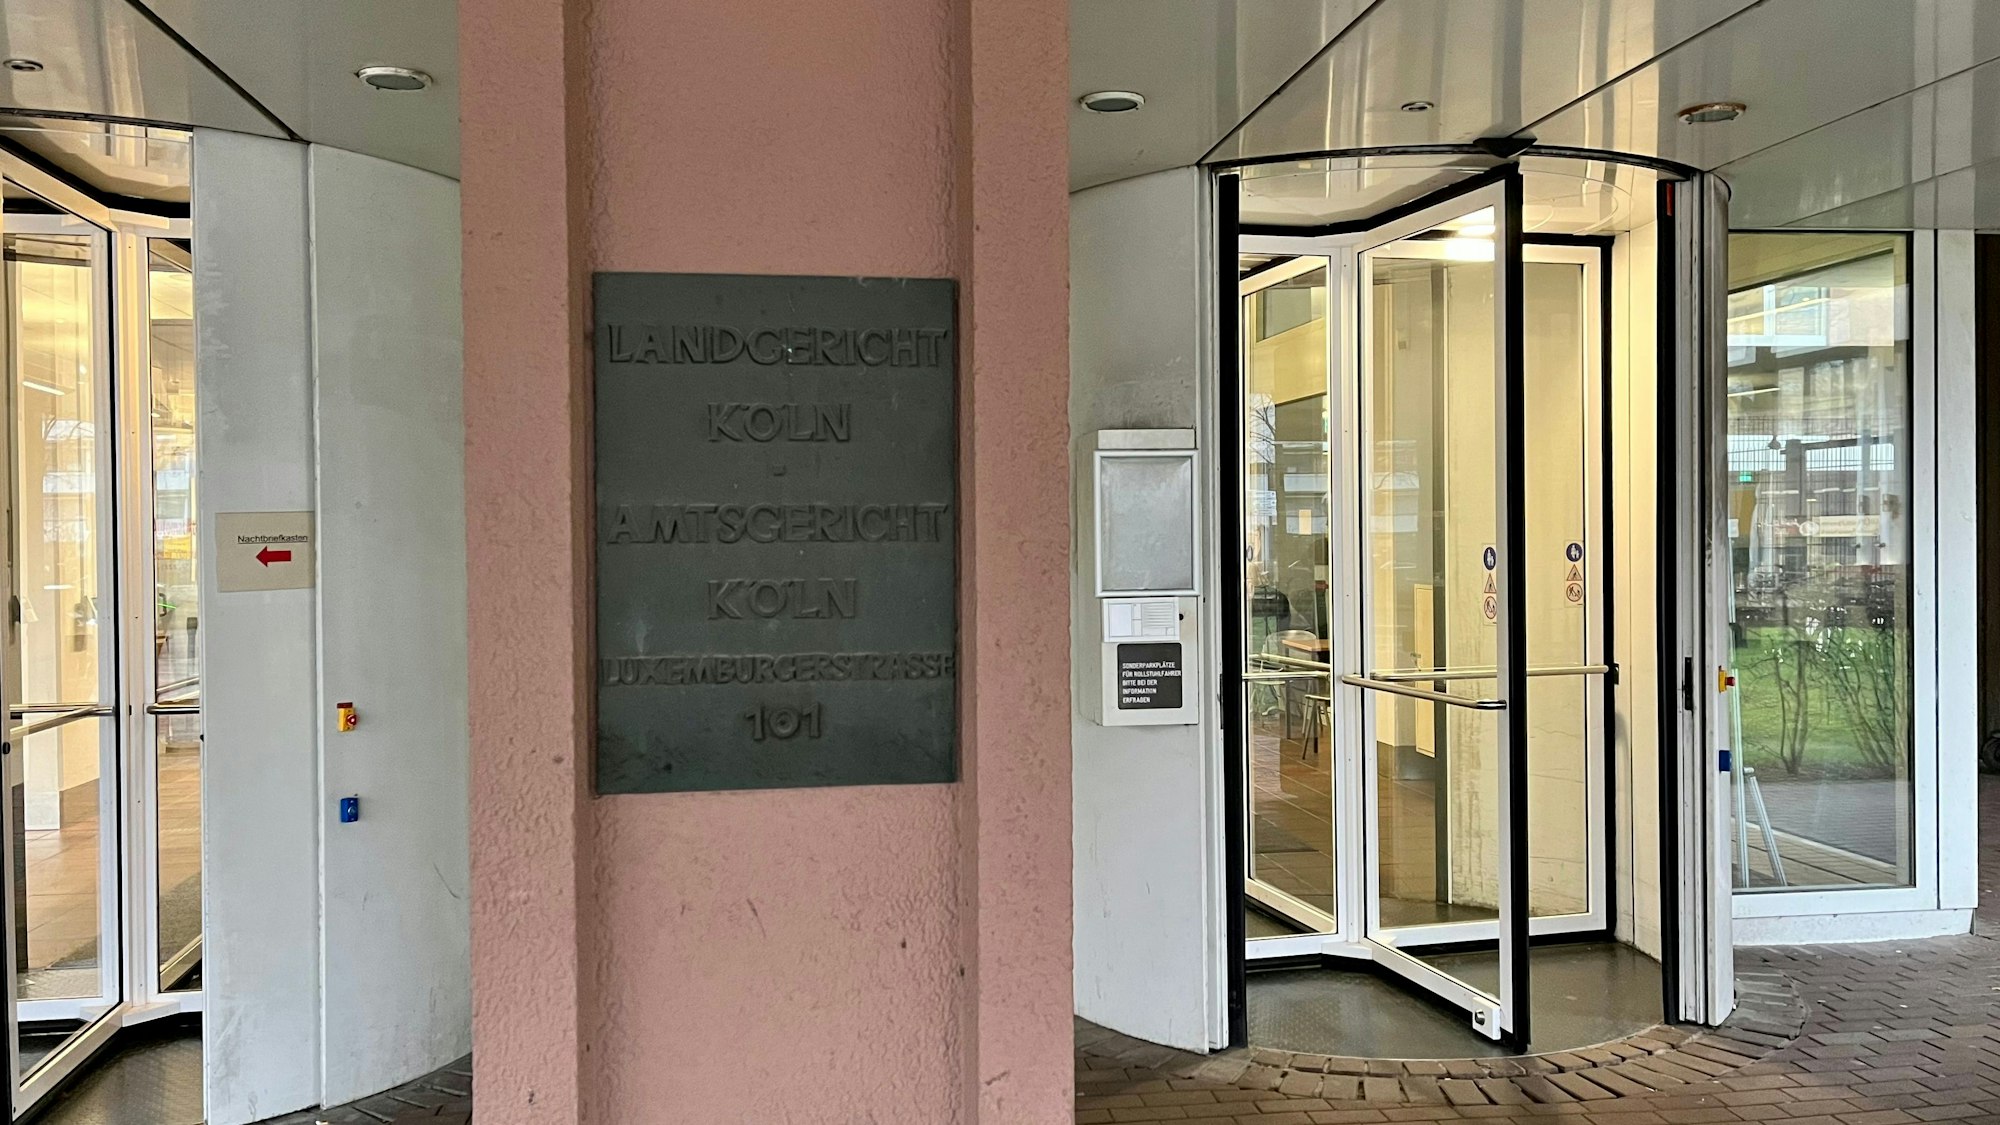 Eingangstüren des Landgerichts in Köln